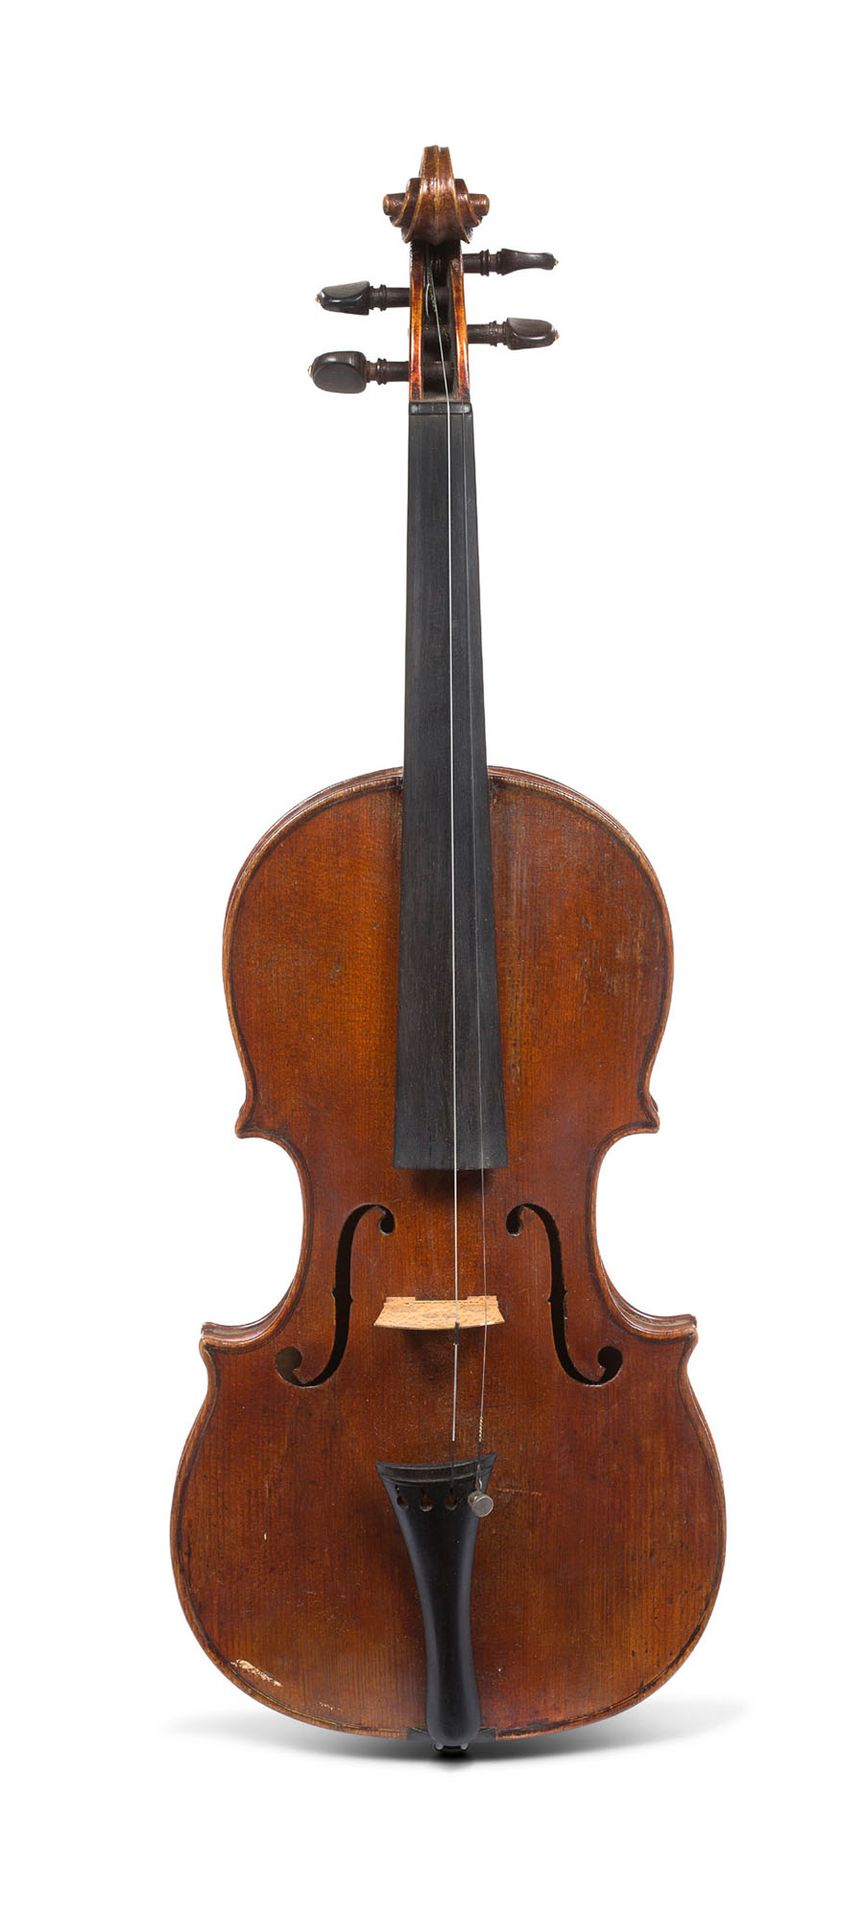 Null 18世纪末的法国小提琴，F.Sirjean的作品，从挡板上可以看到制作者的铁印。
顶部有轻微的修复。359毫米。